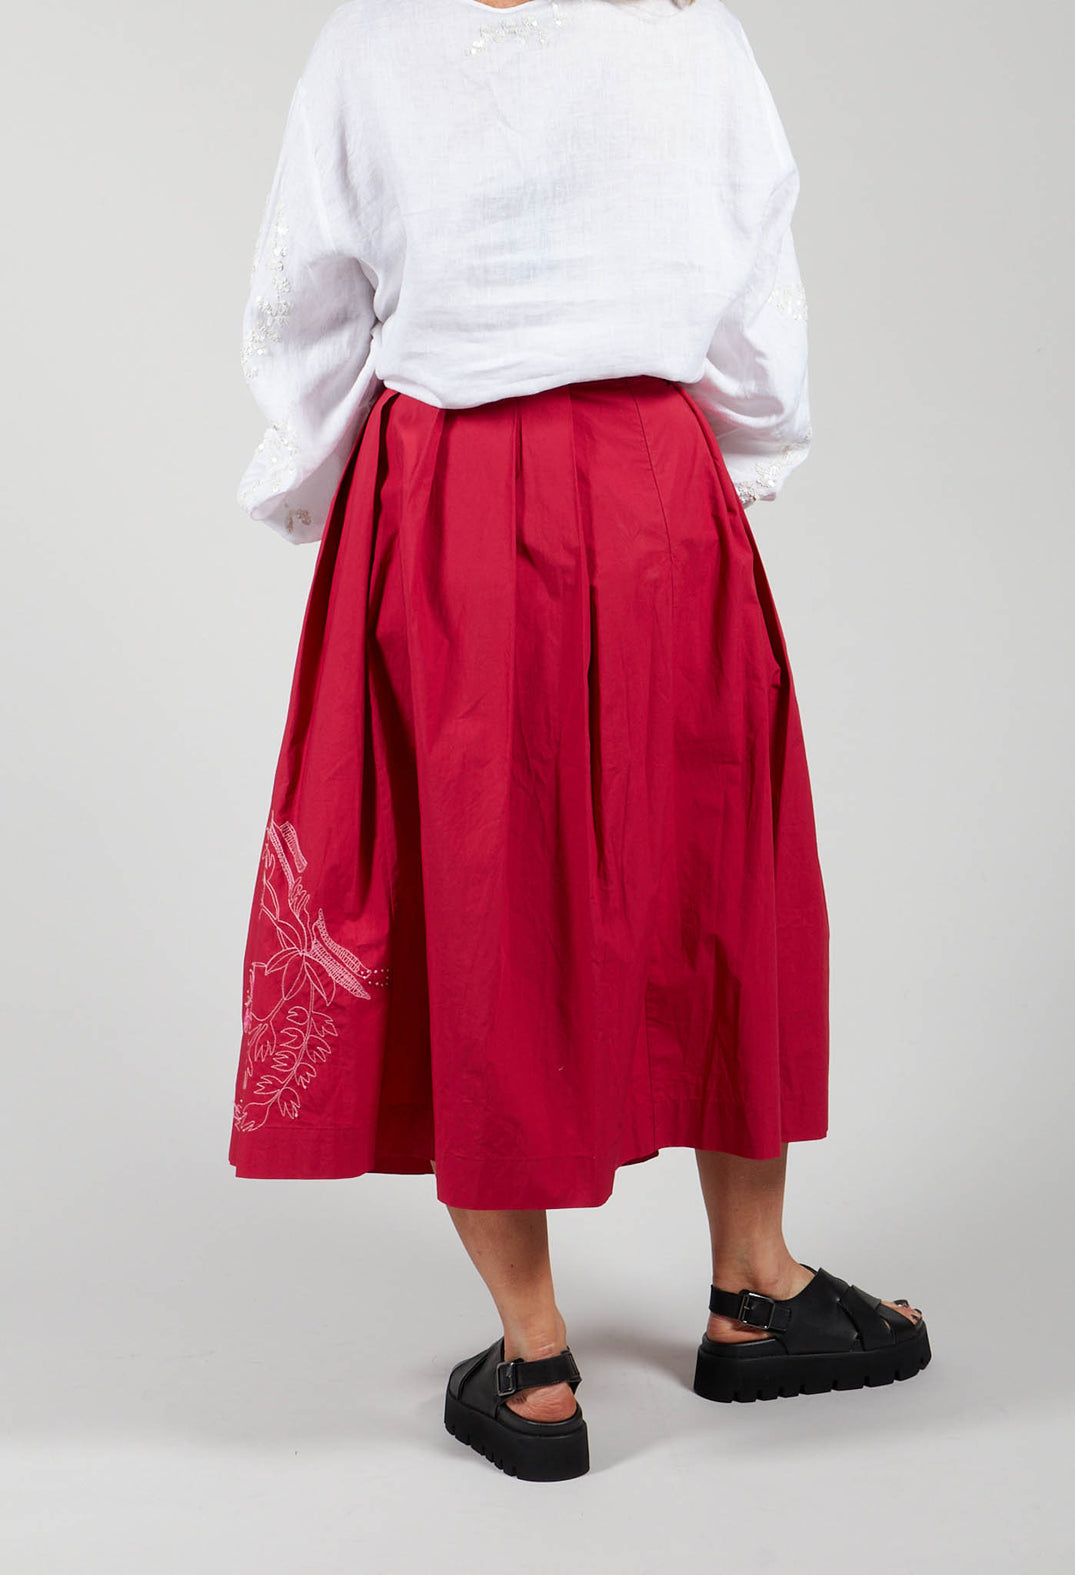 Skirt in Cremisi-Crimson